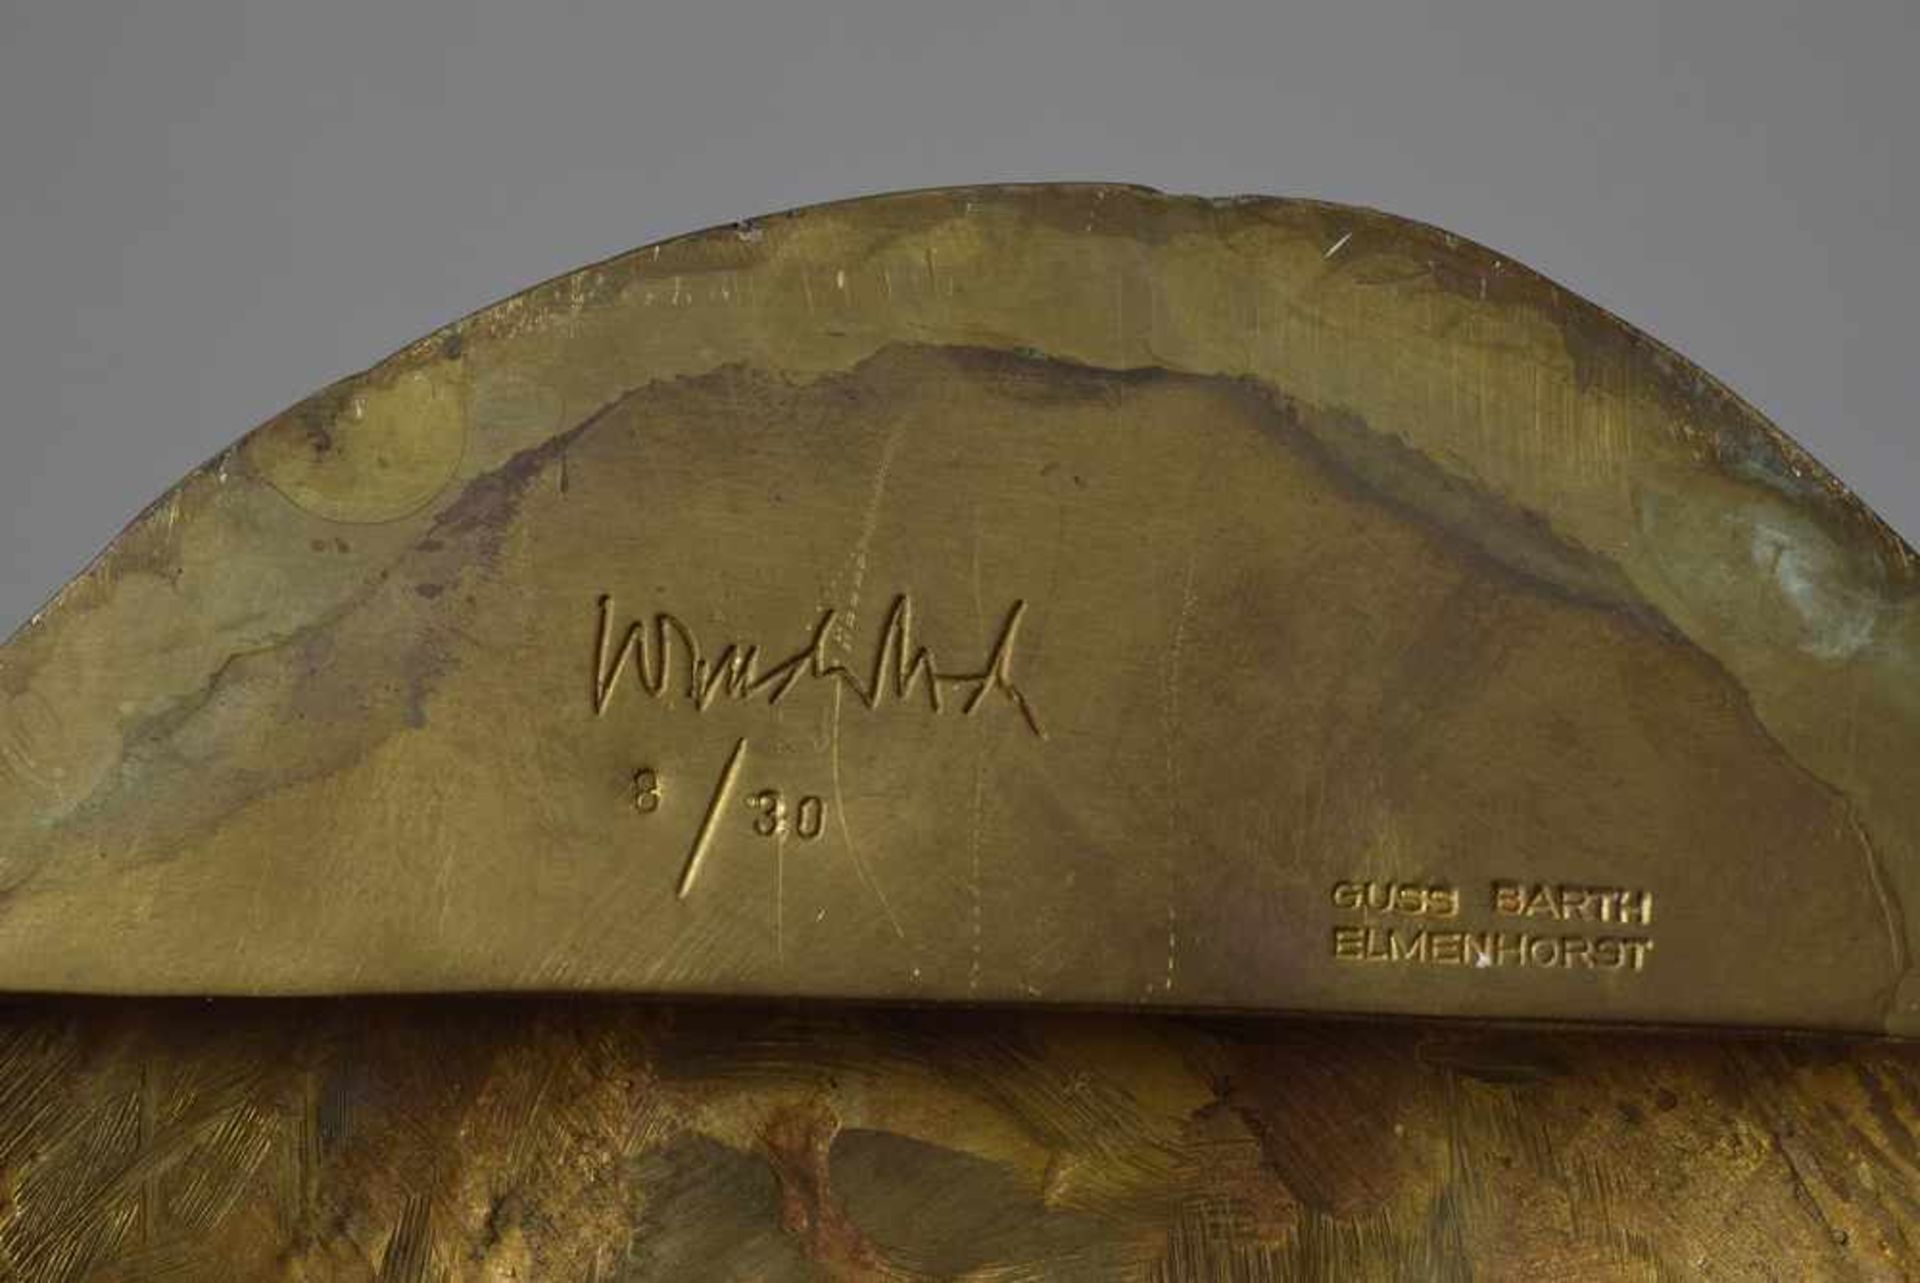 Wunderlich, Paul (1927-2010) "Maske", 3/30, Bronze patiniert, num./sign., Guss Barth Elmenhorst, - Image 3 of 3